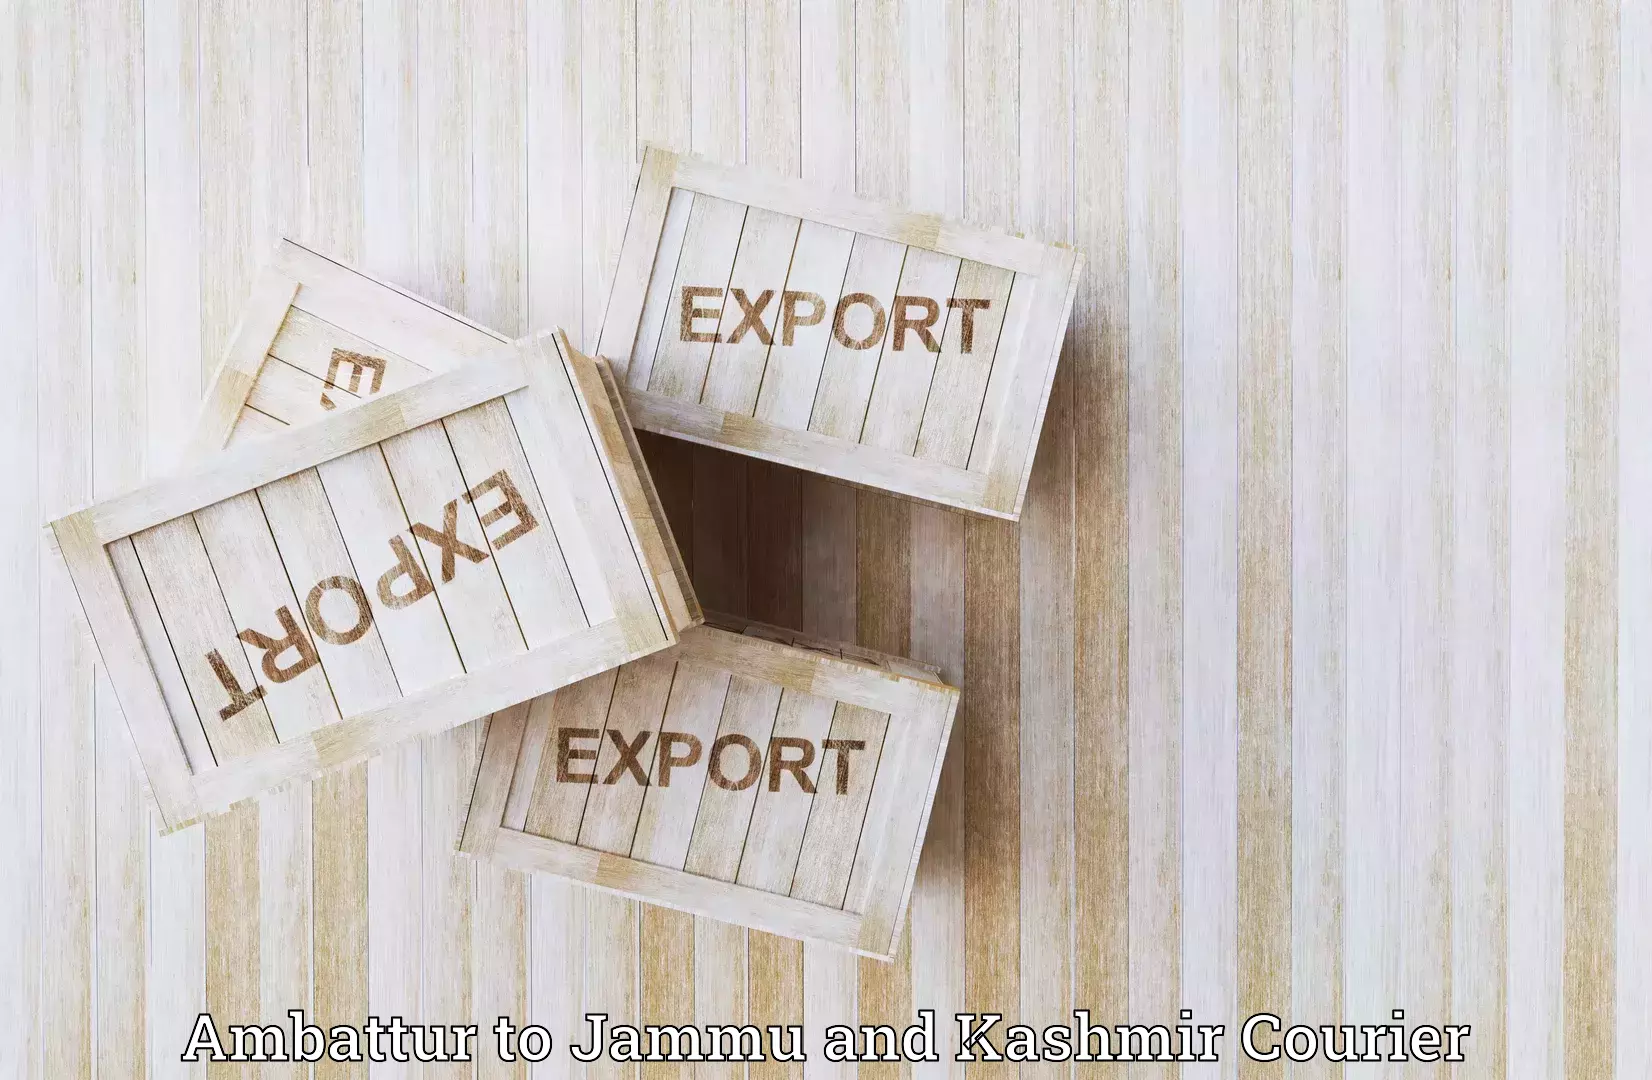 Digital shipping tools Ambattur to Srinagar Kashmir